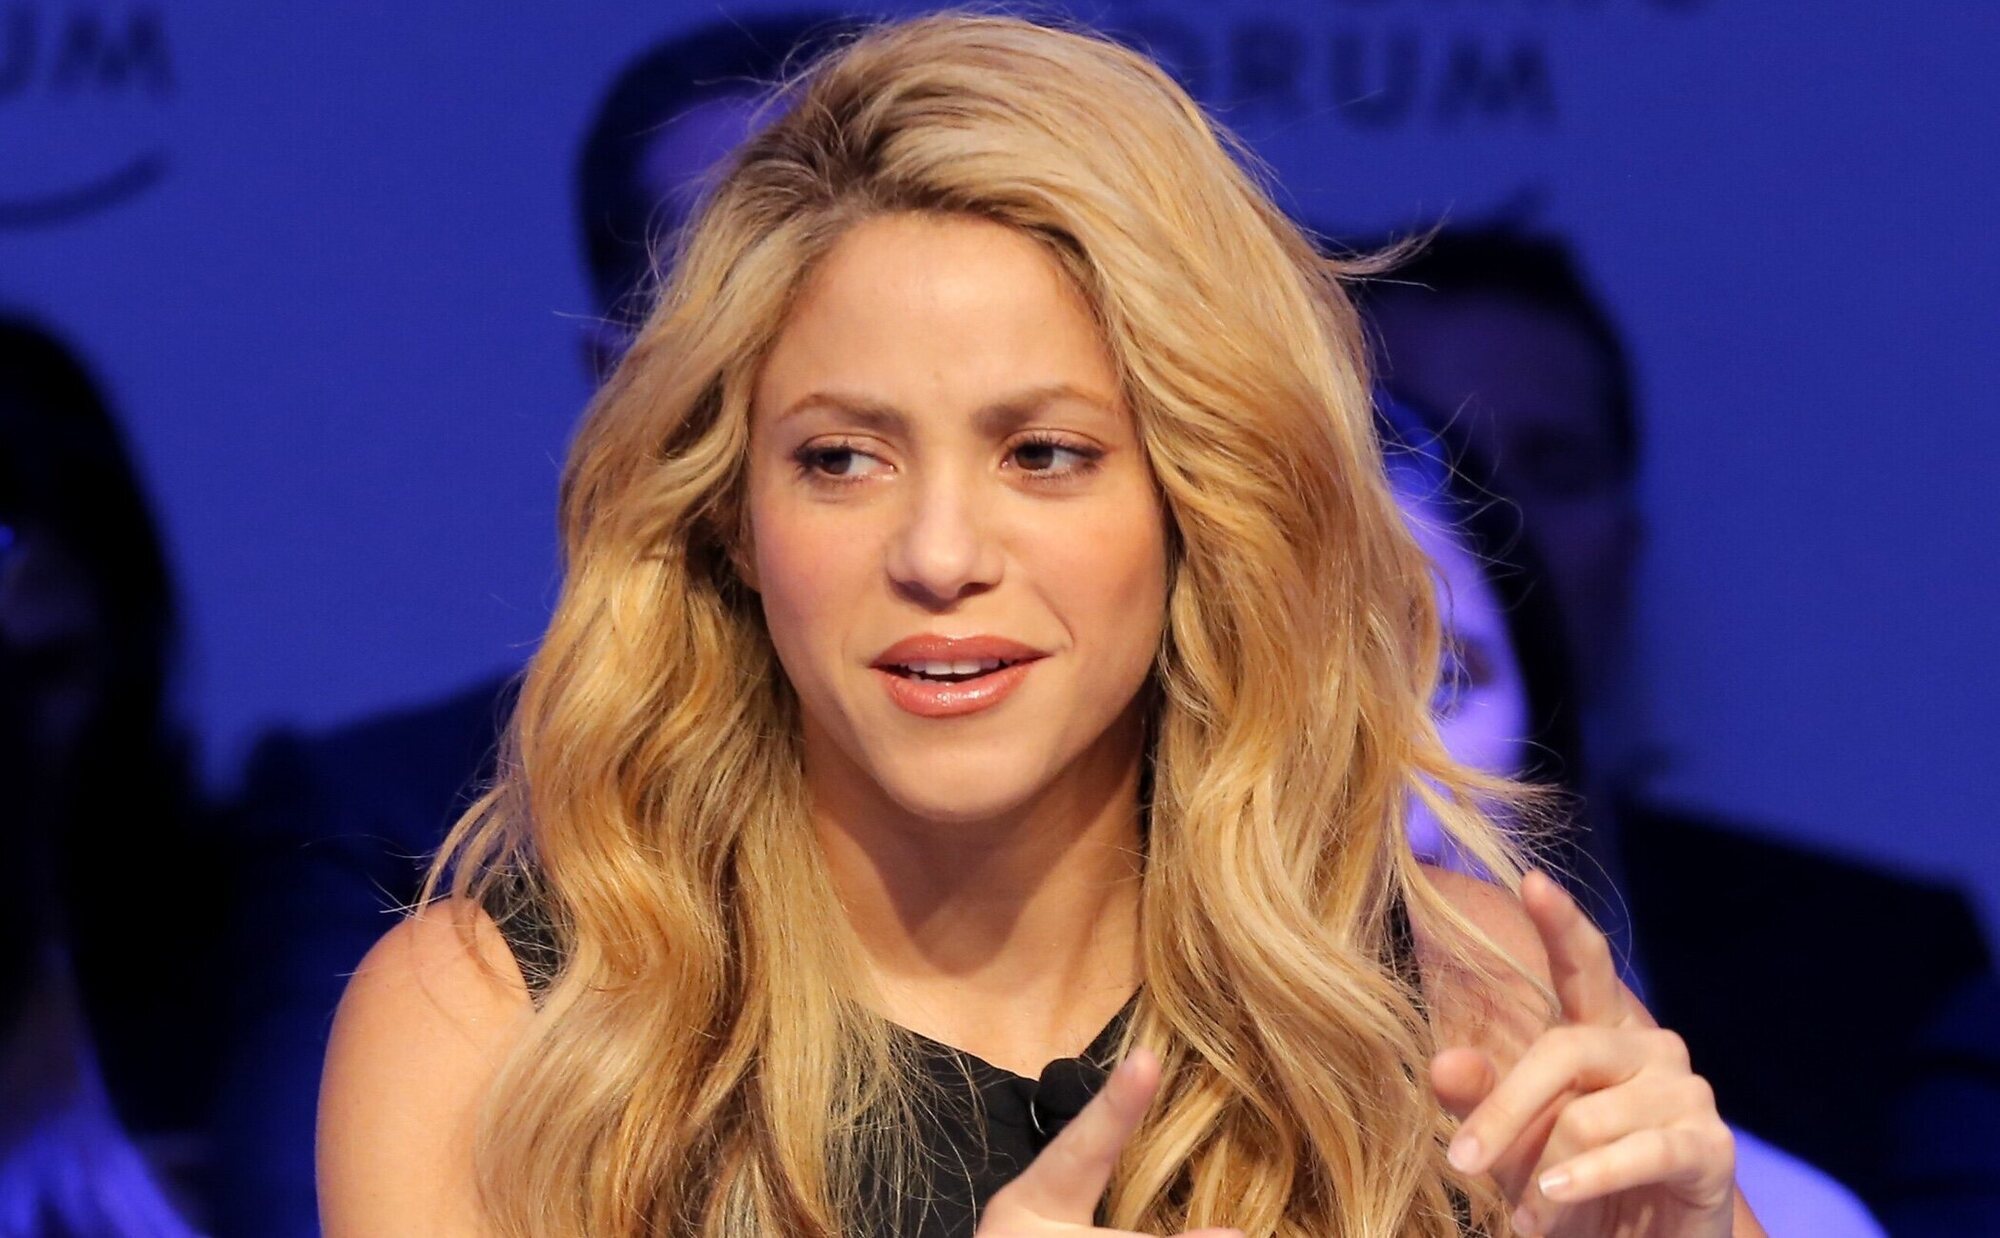 Abierta una segunda causa a Shakira por fraude fiscal en el IRPF y patrimonio de 2018